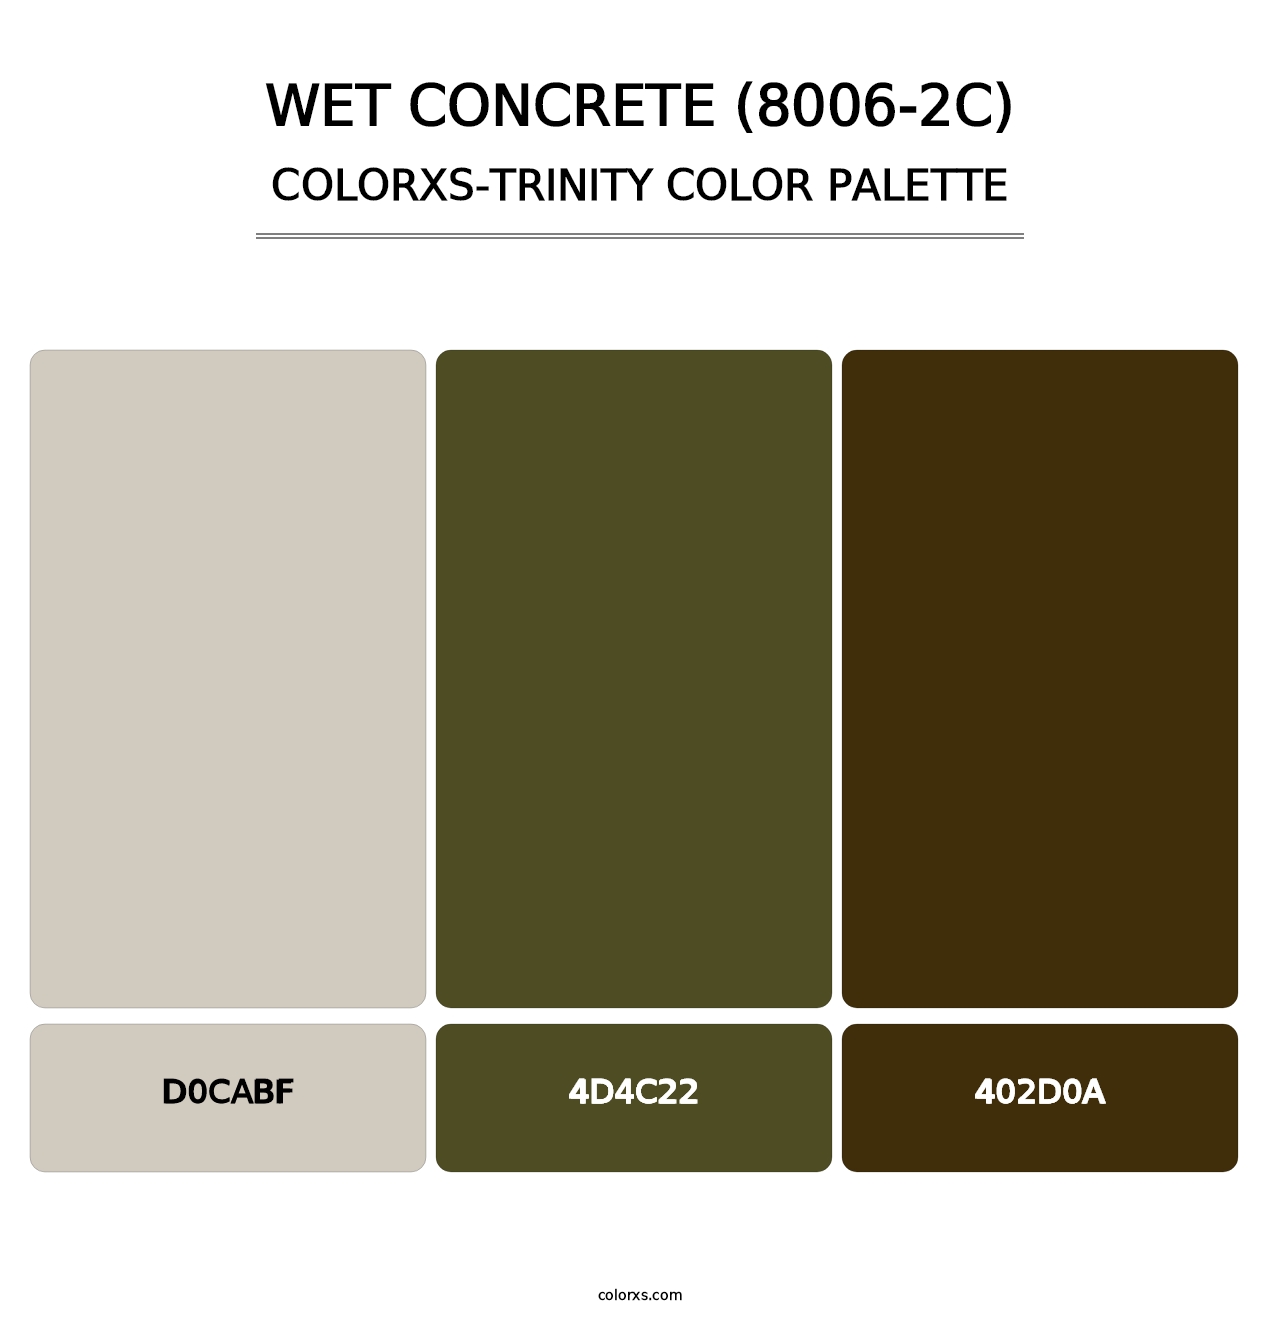 Wet Concrete (8006-2C) - Colorxs Trinity Palette